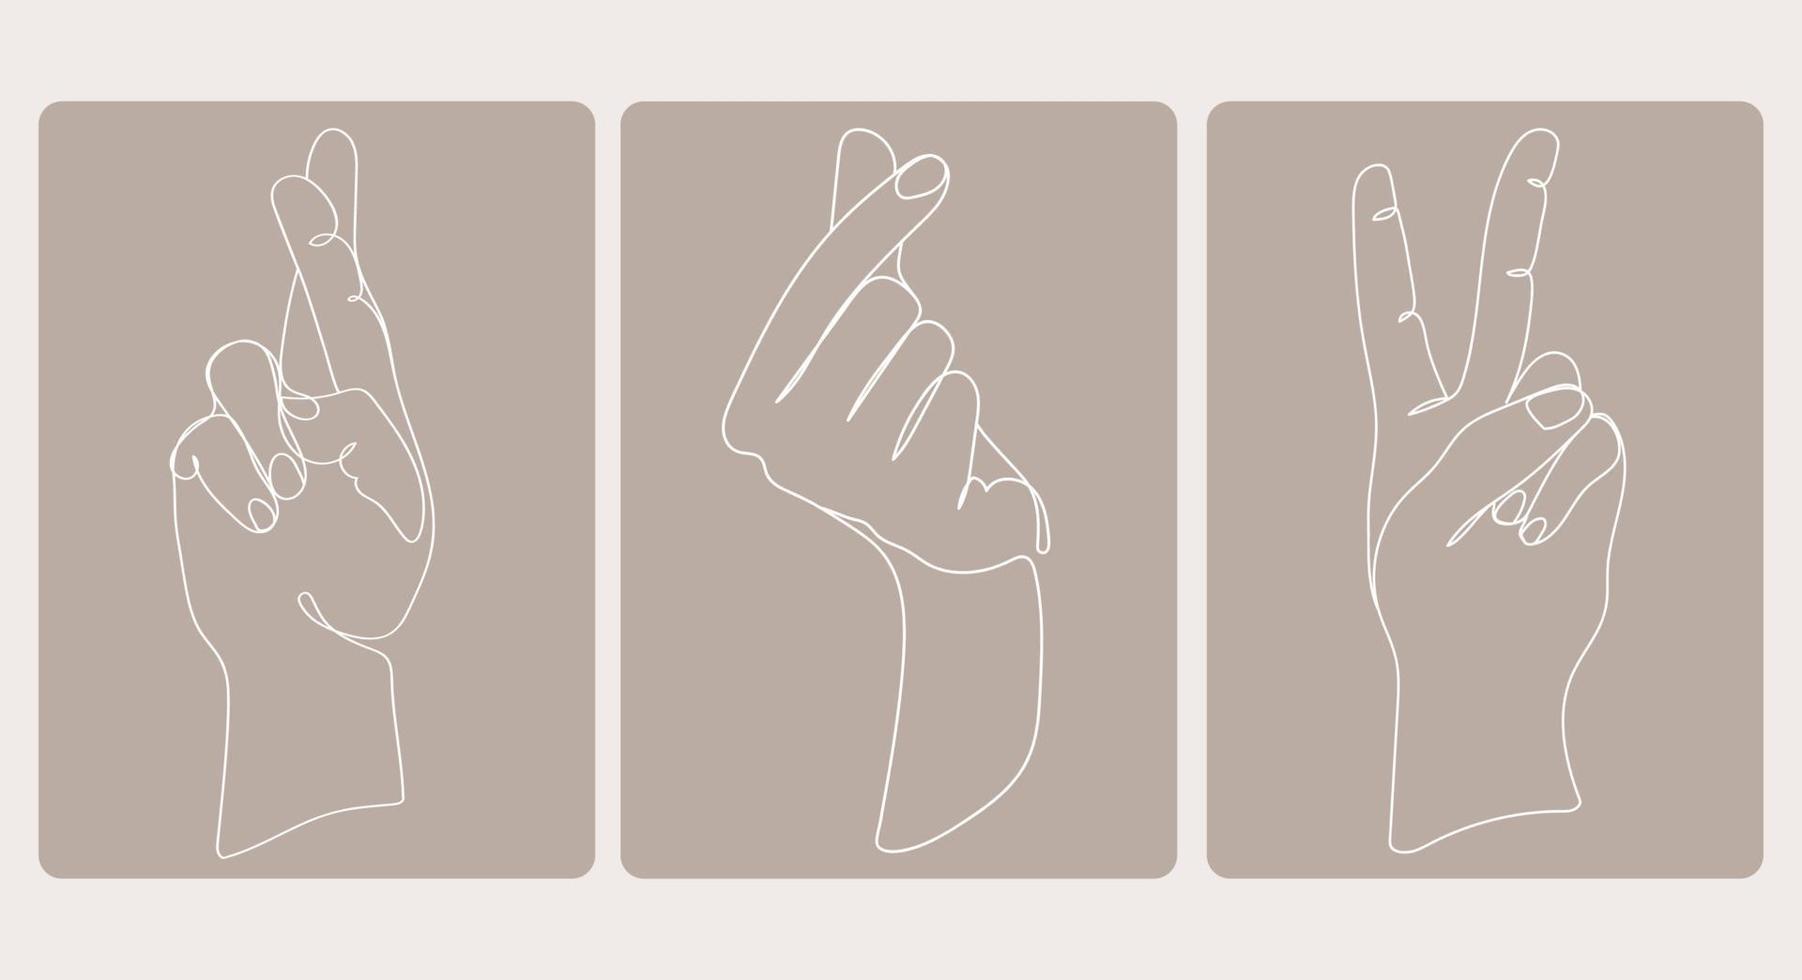 colección de manos en diferentes posiciones, gestos para el afiche, logotipo, plantilla de emblema en estilo de arte mínimo de moda, ilustración vectorial de dibujo monoline. tarjetas con diferentes gestos de manos establecidos vector